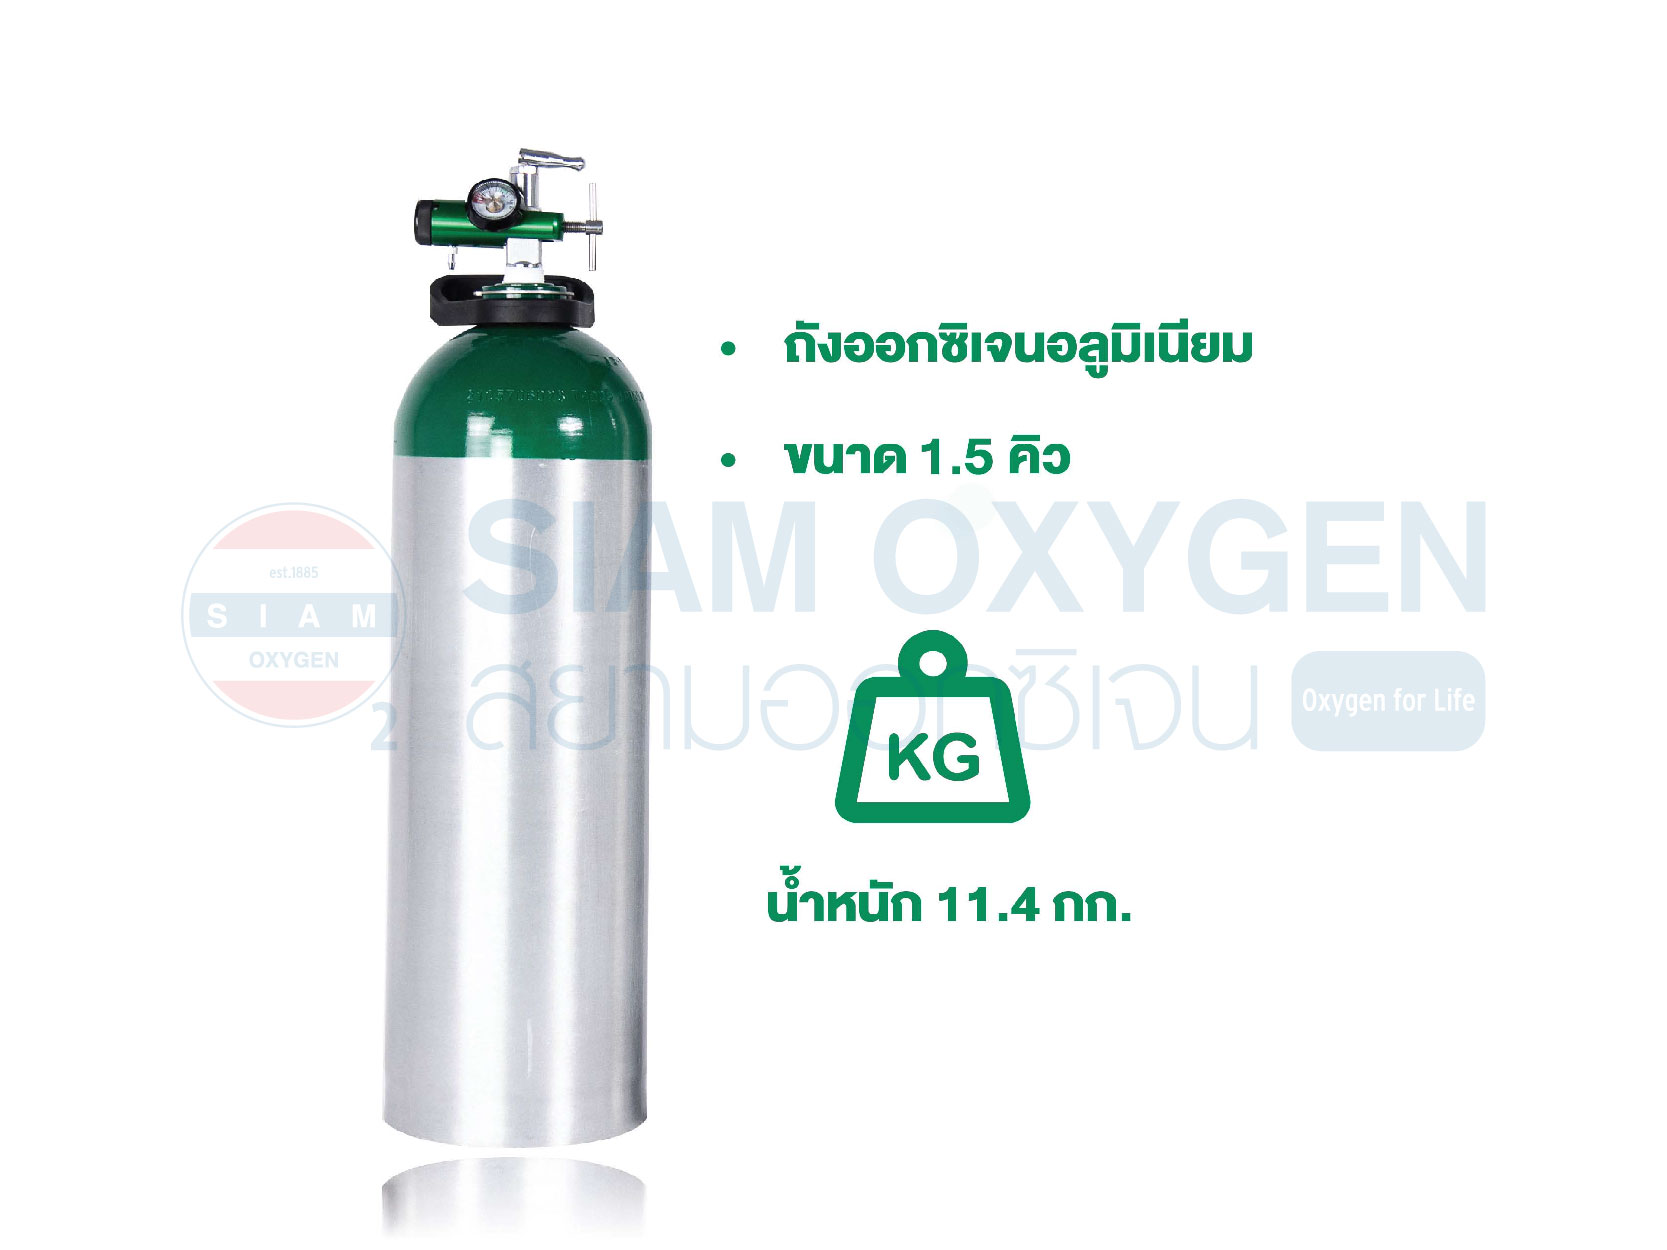 ชุดถังออกซิเจน อลูมิเนียม Venn Oxy รุ่น MD ขนาด 1.5 คิว